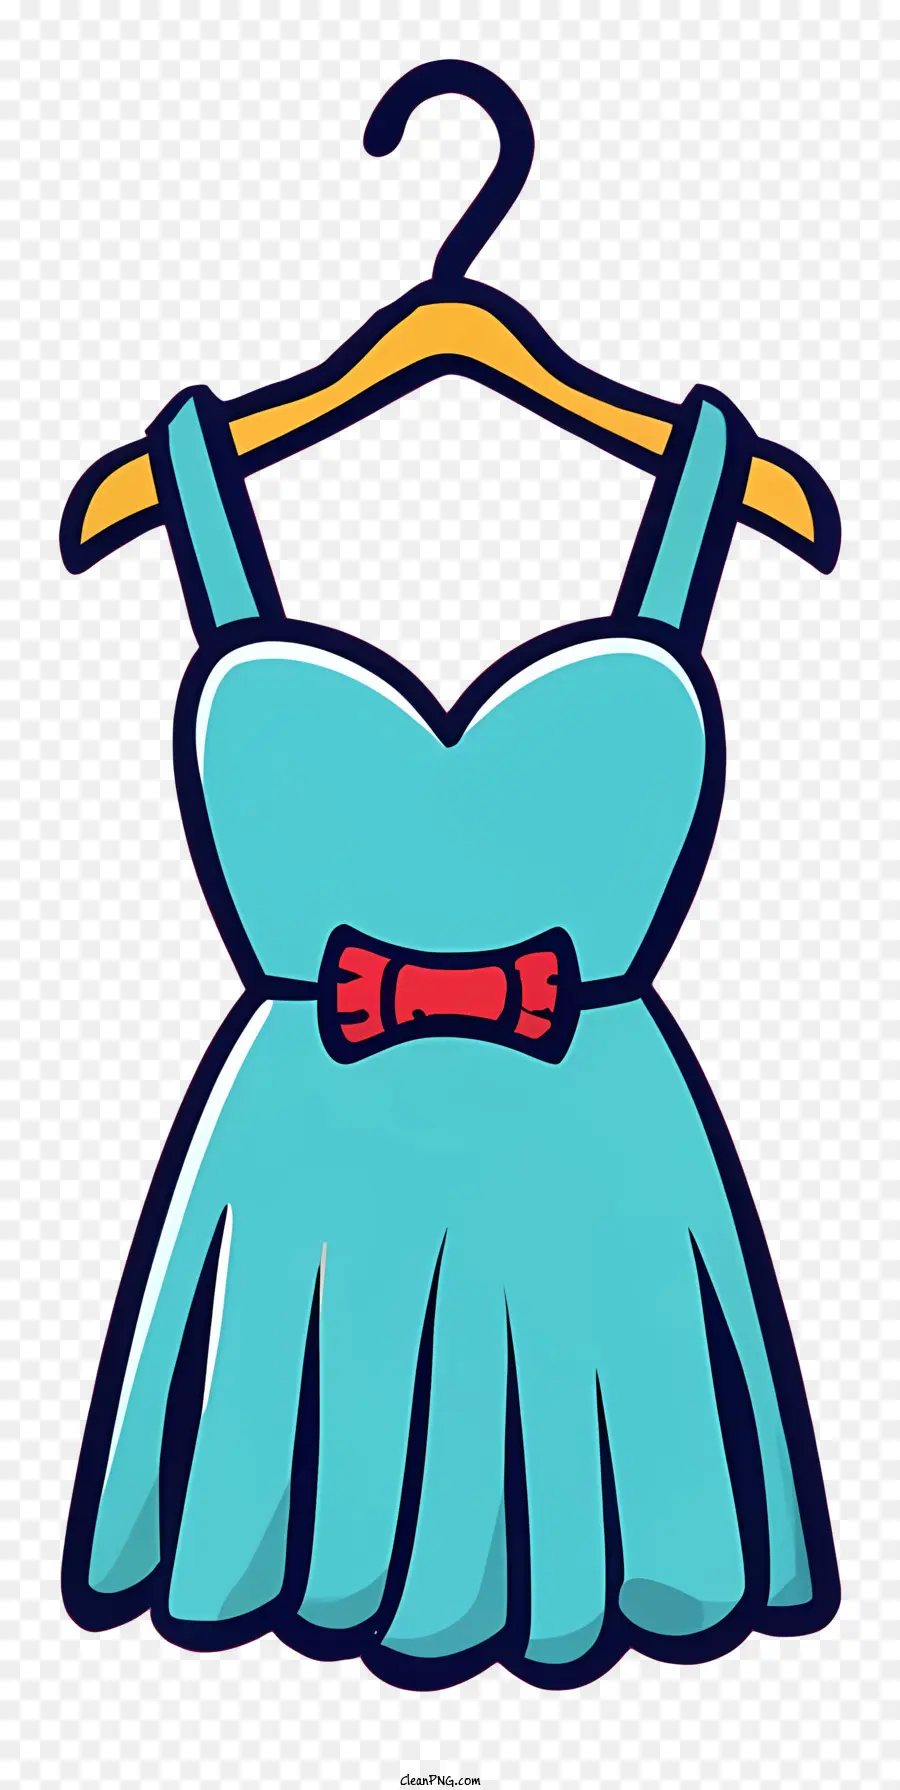 Cartoon blaues Kleid rotes Bogen weißer Kragen Kurzärmele - Blaues Kleid mit rot -weißen Details